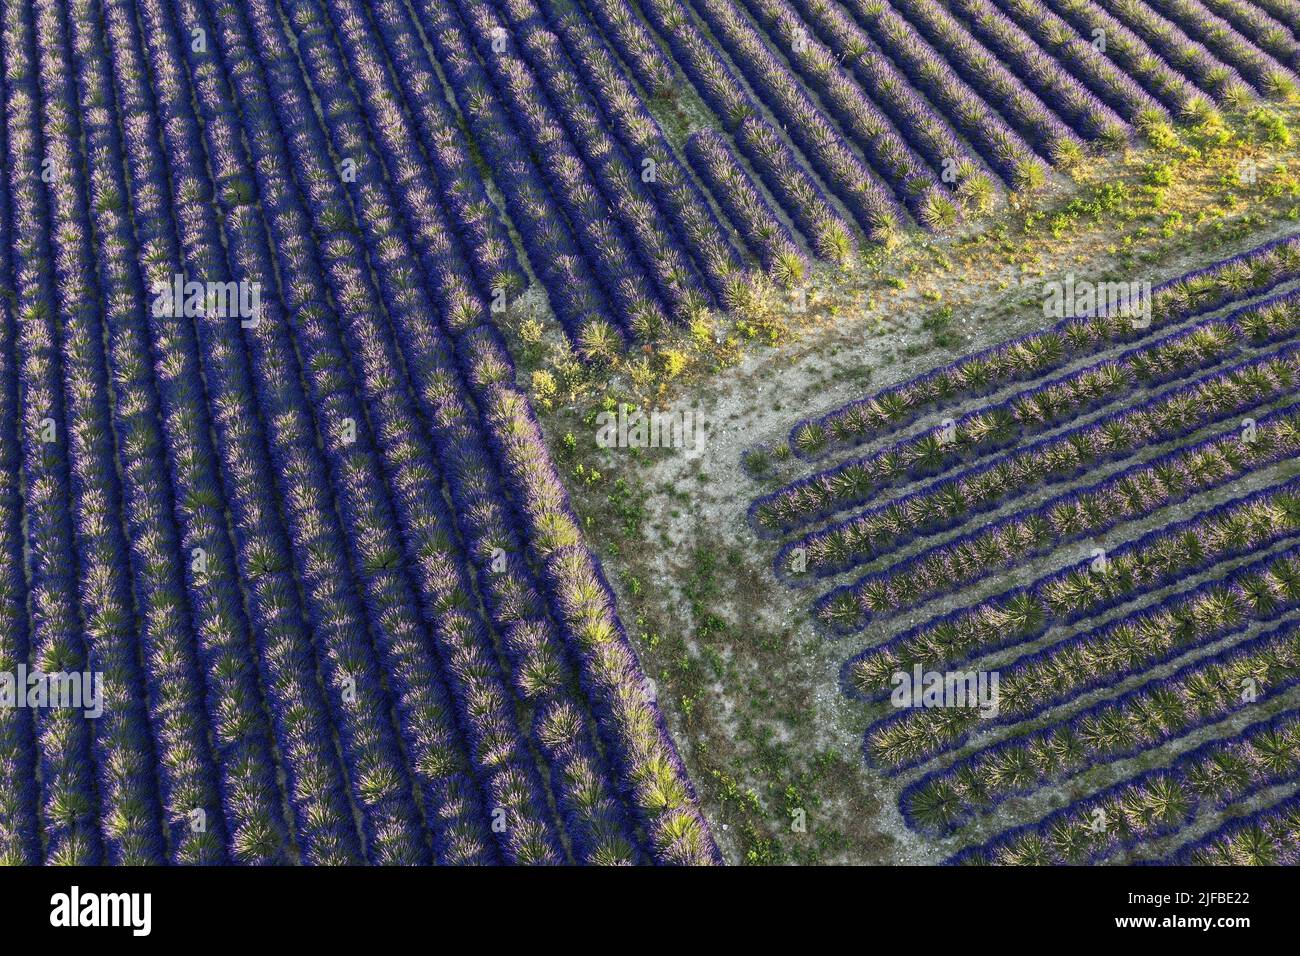 France, Alpes de Haute Provence, Reillanne, lavender field (aerial view) Stock Photo